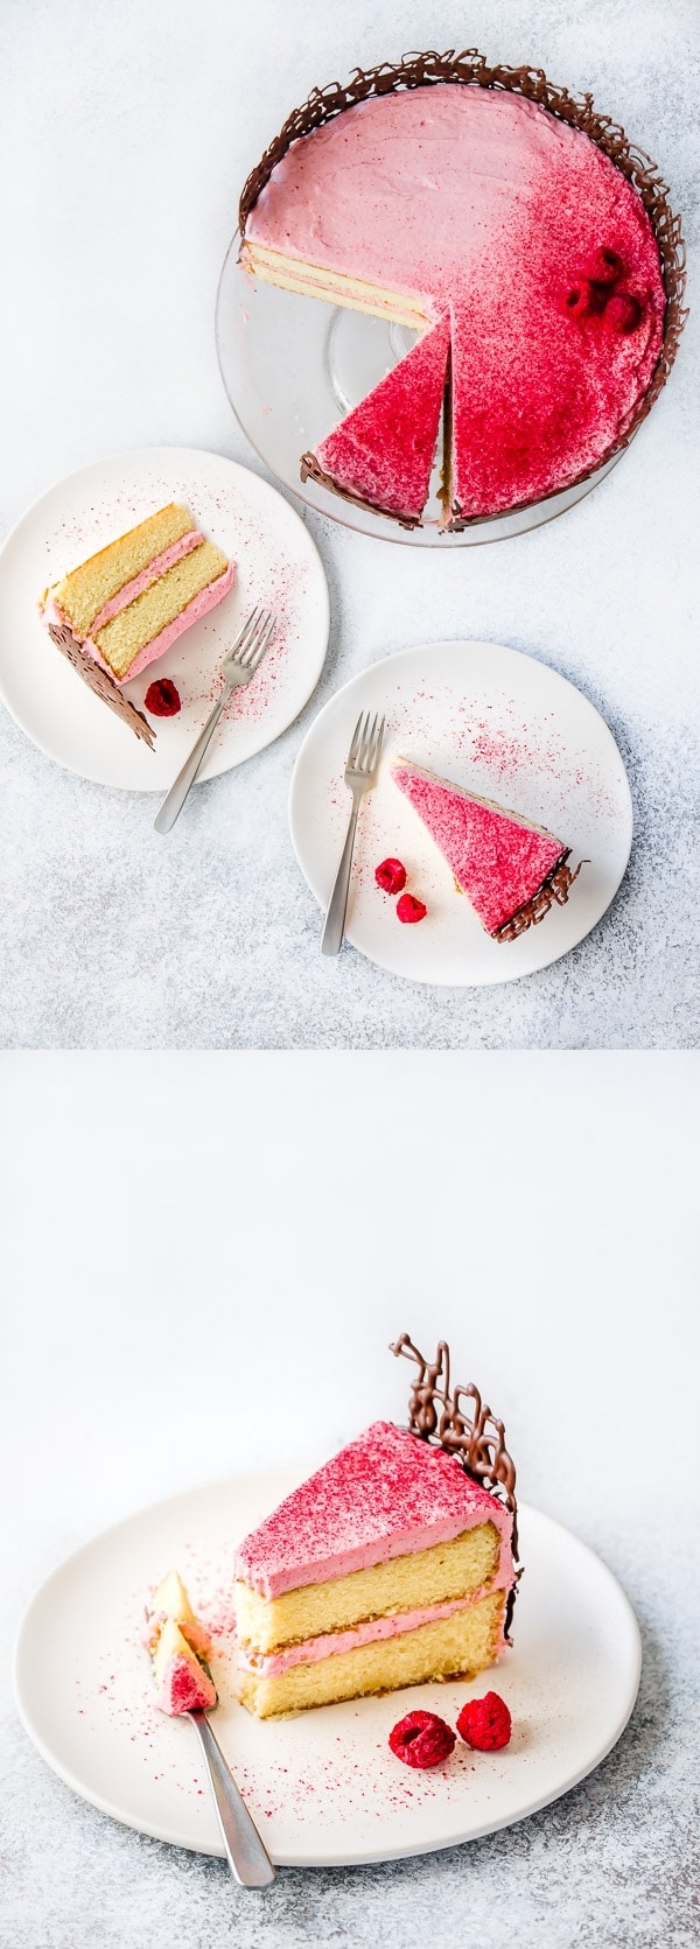 présentation originale d'un gâteau d'anniversaire vanille et framboise au glacage framboise, au déco dentelle de chocolat